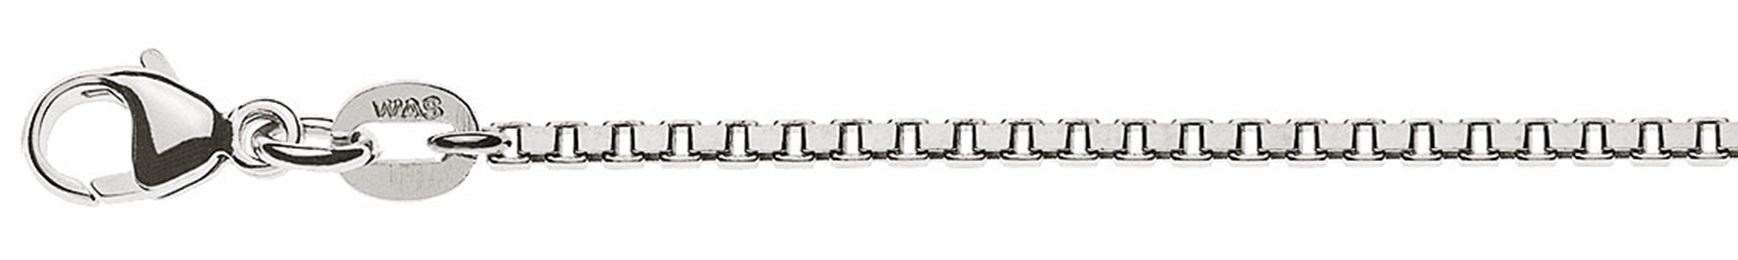 AURONOS Prestige Halskette Weissgold 18K Venezianerkette diamantiert 42cm 1.6mm